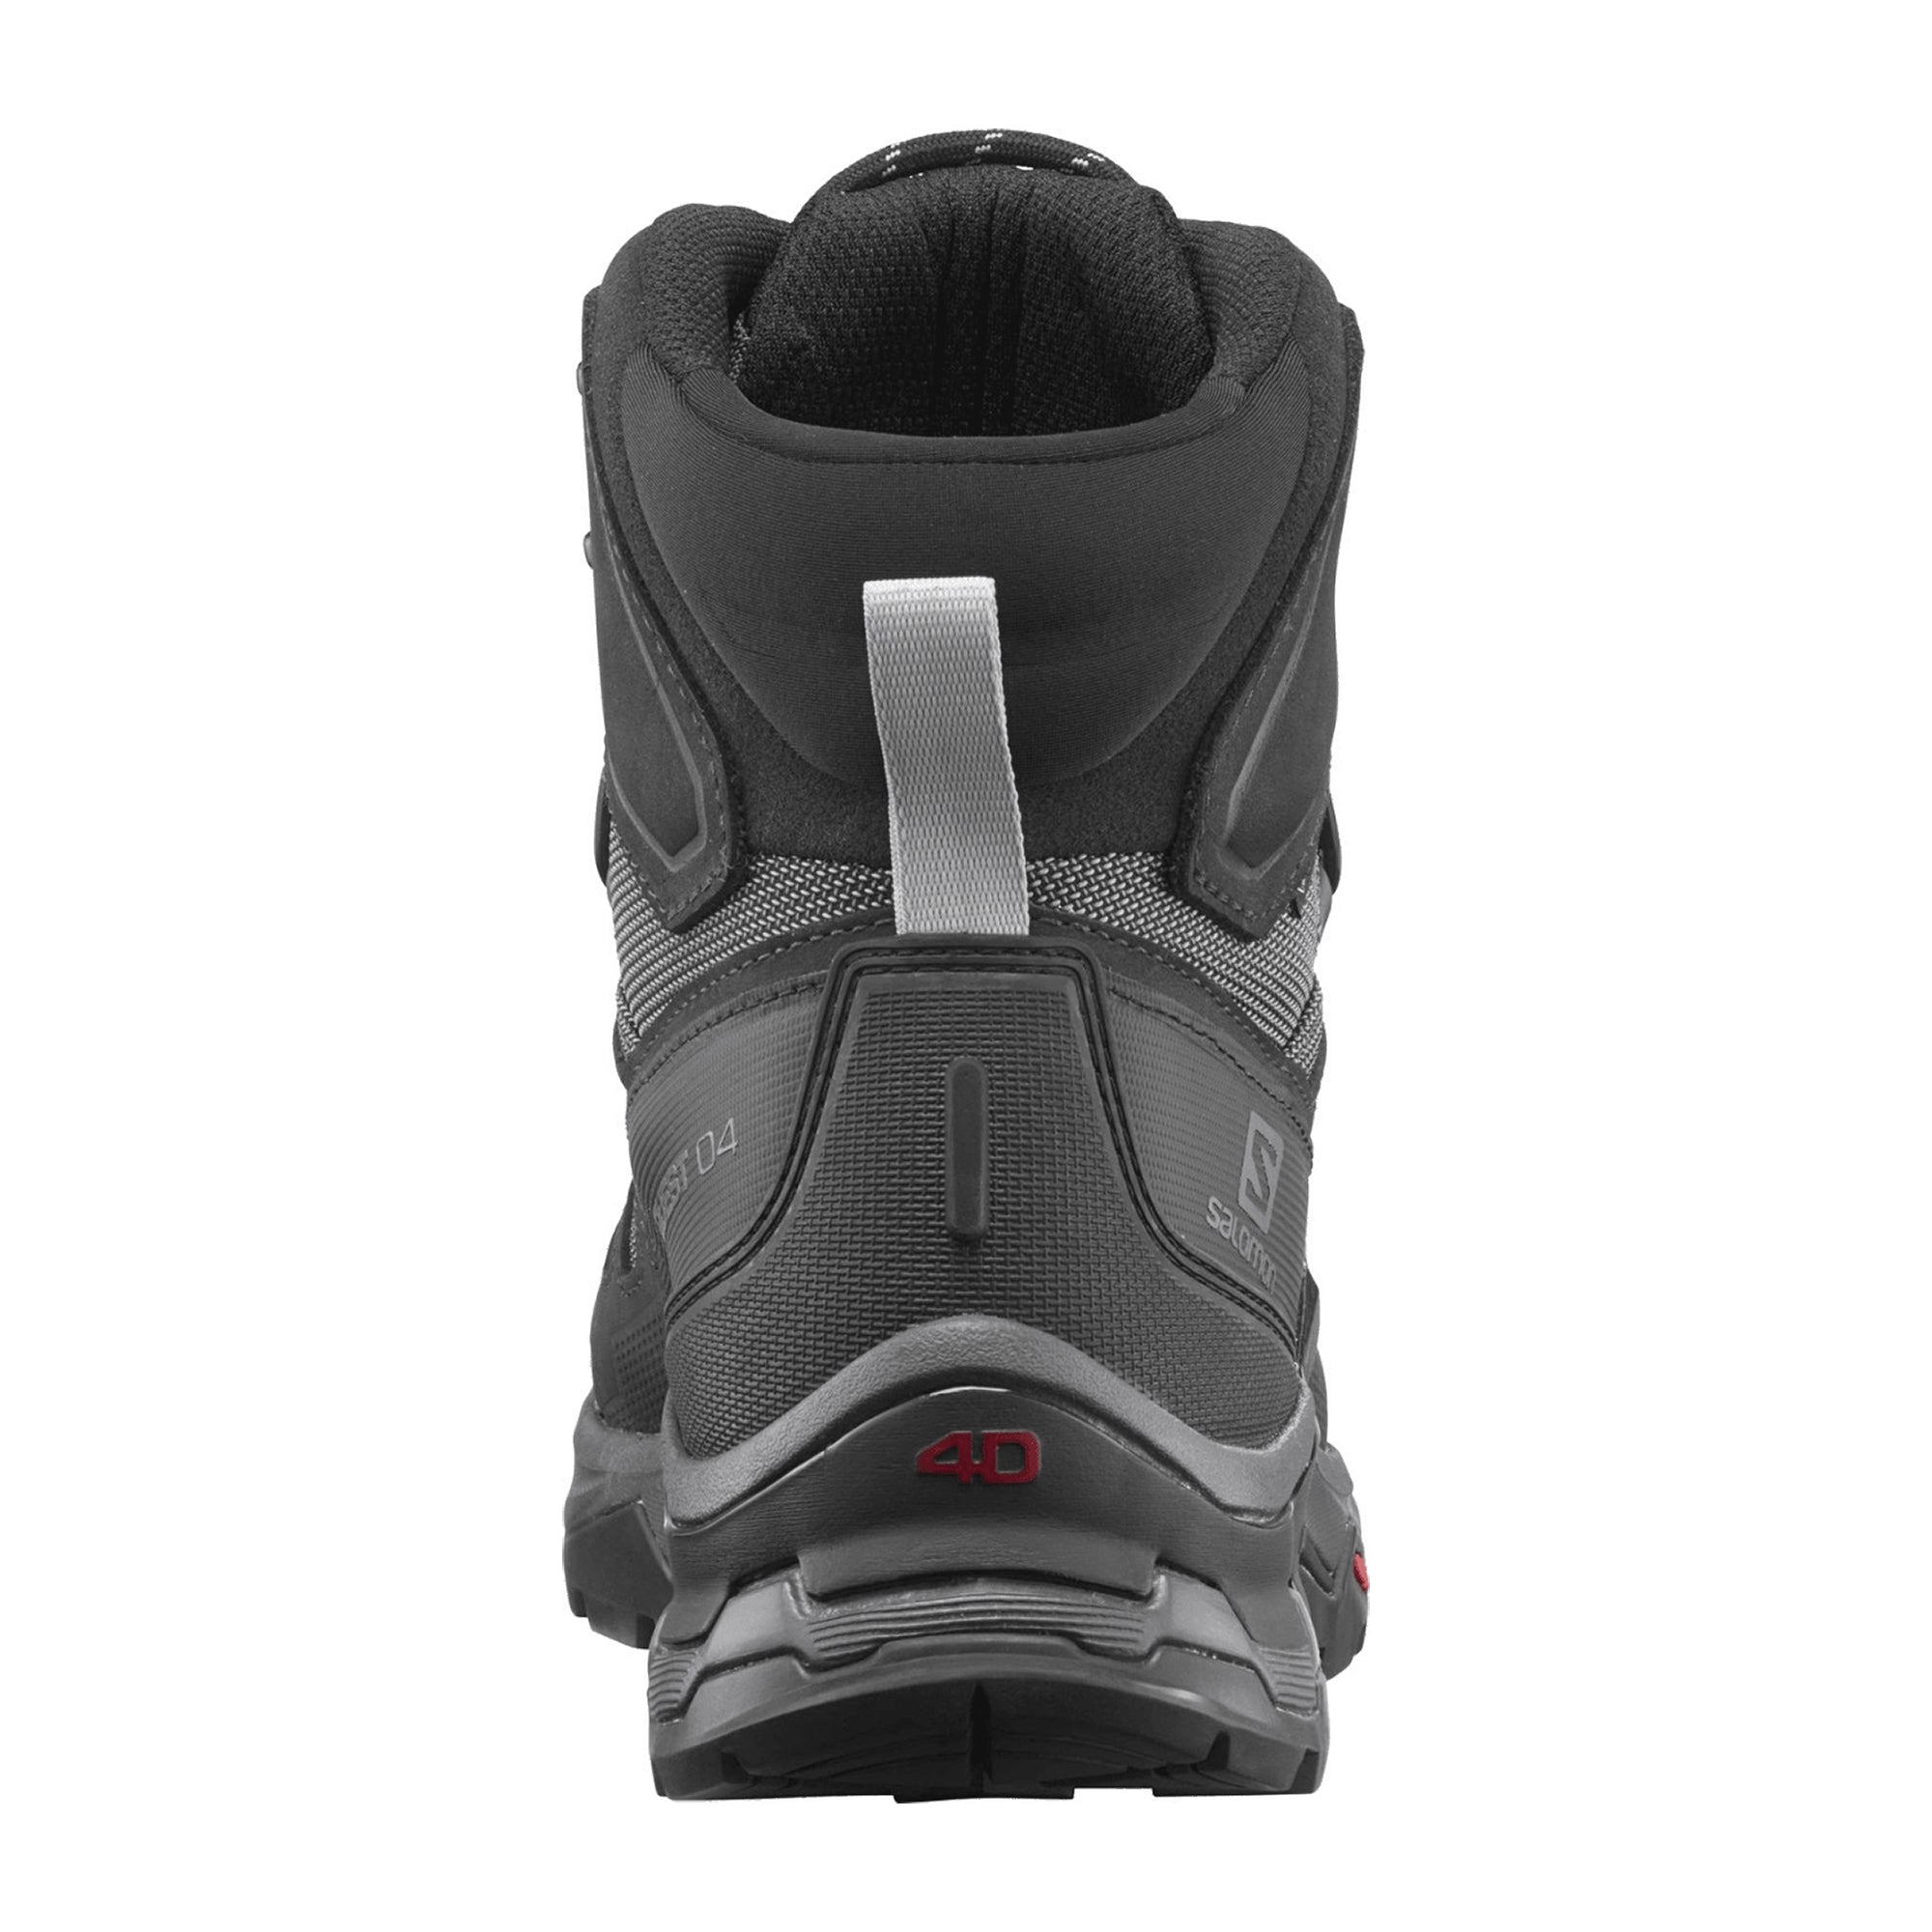 Salomon Quest 4D GTX for men, gray, shoes